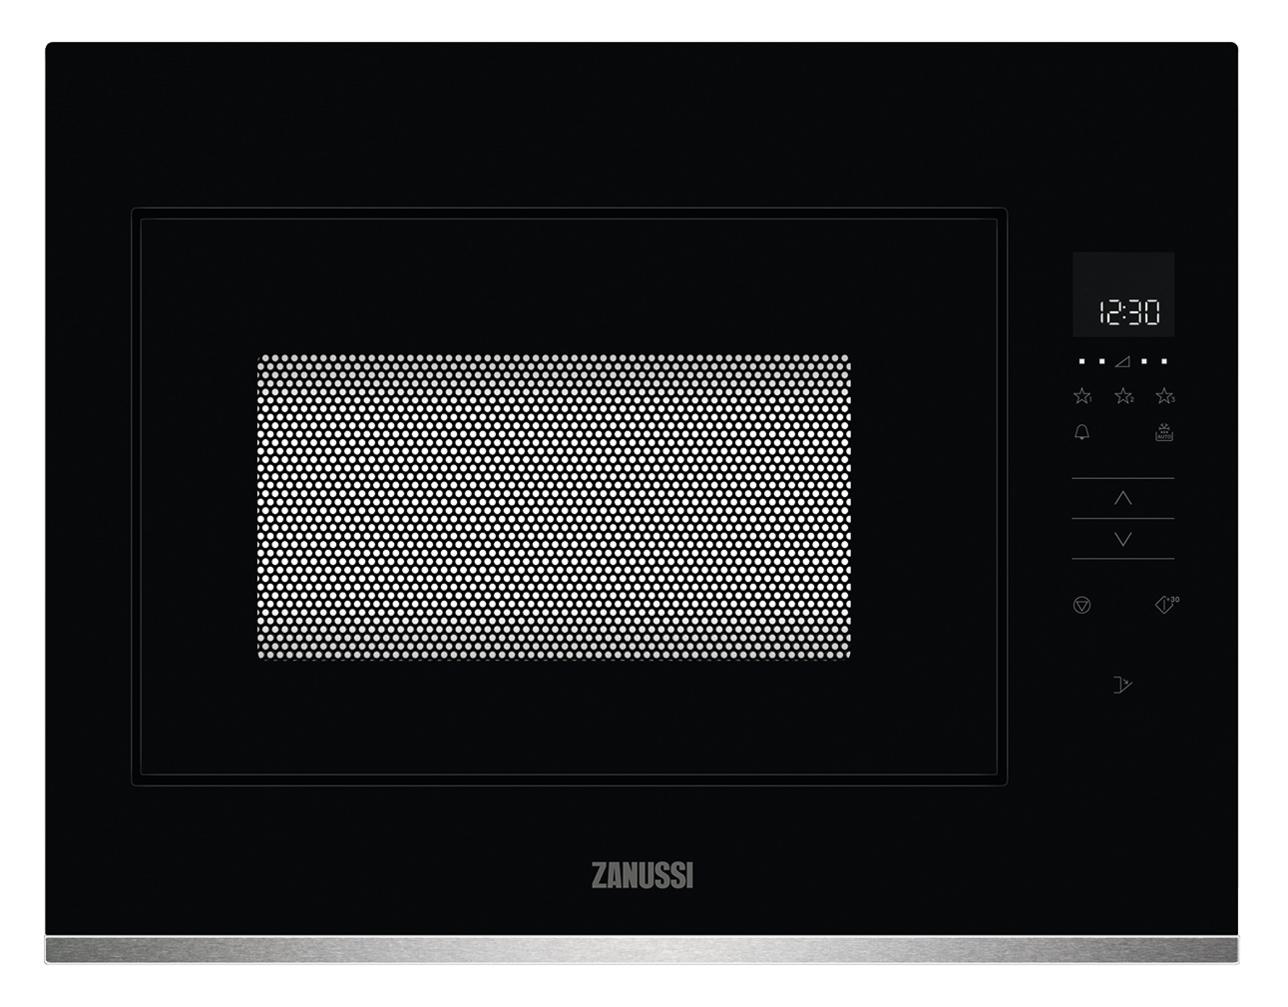 فرن ميكرويف بلت ان 60 سم 900 واط زنوسي Zanussi Built In Compact Microwave Oven